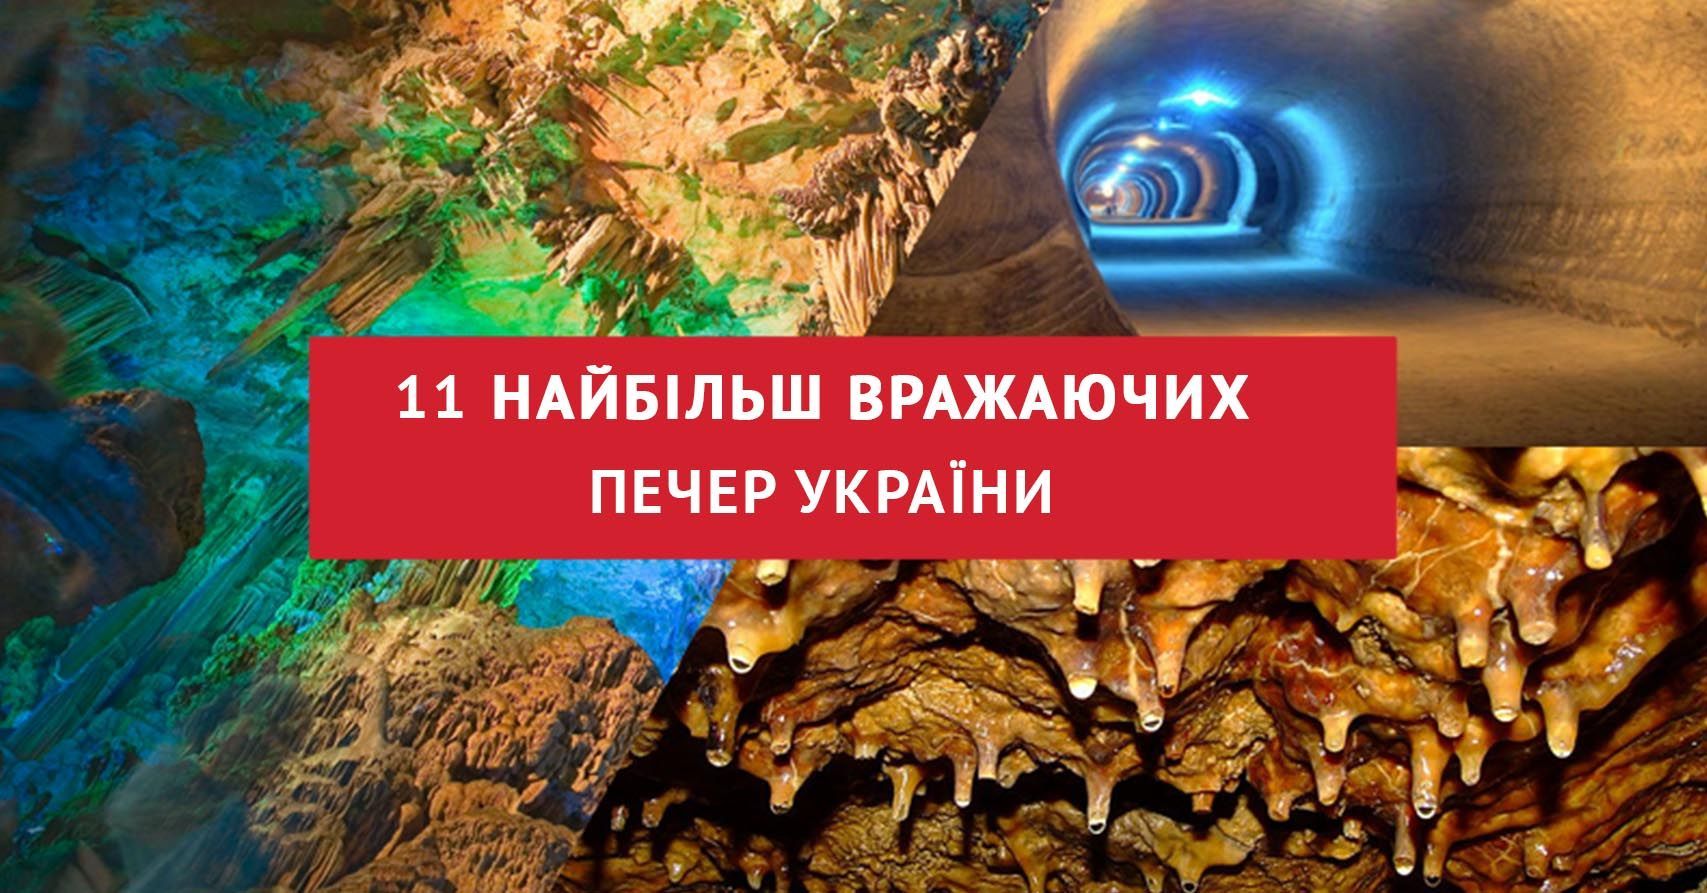 11 пещер Украины, которые поразят каждого